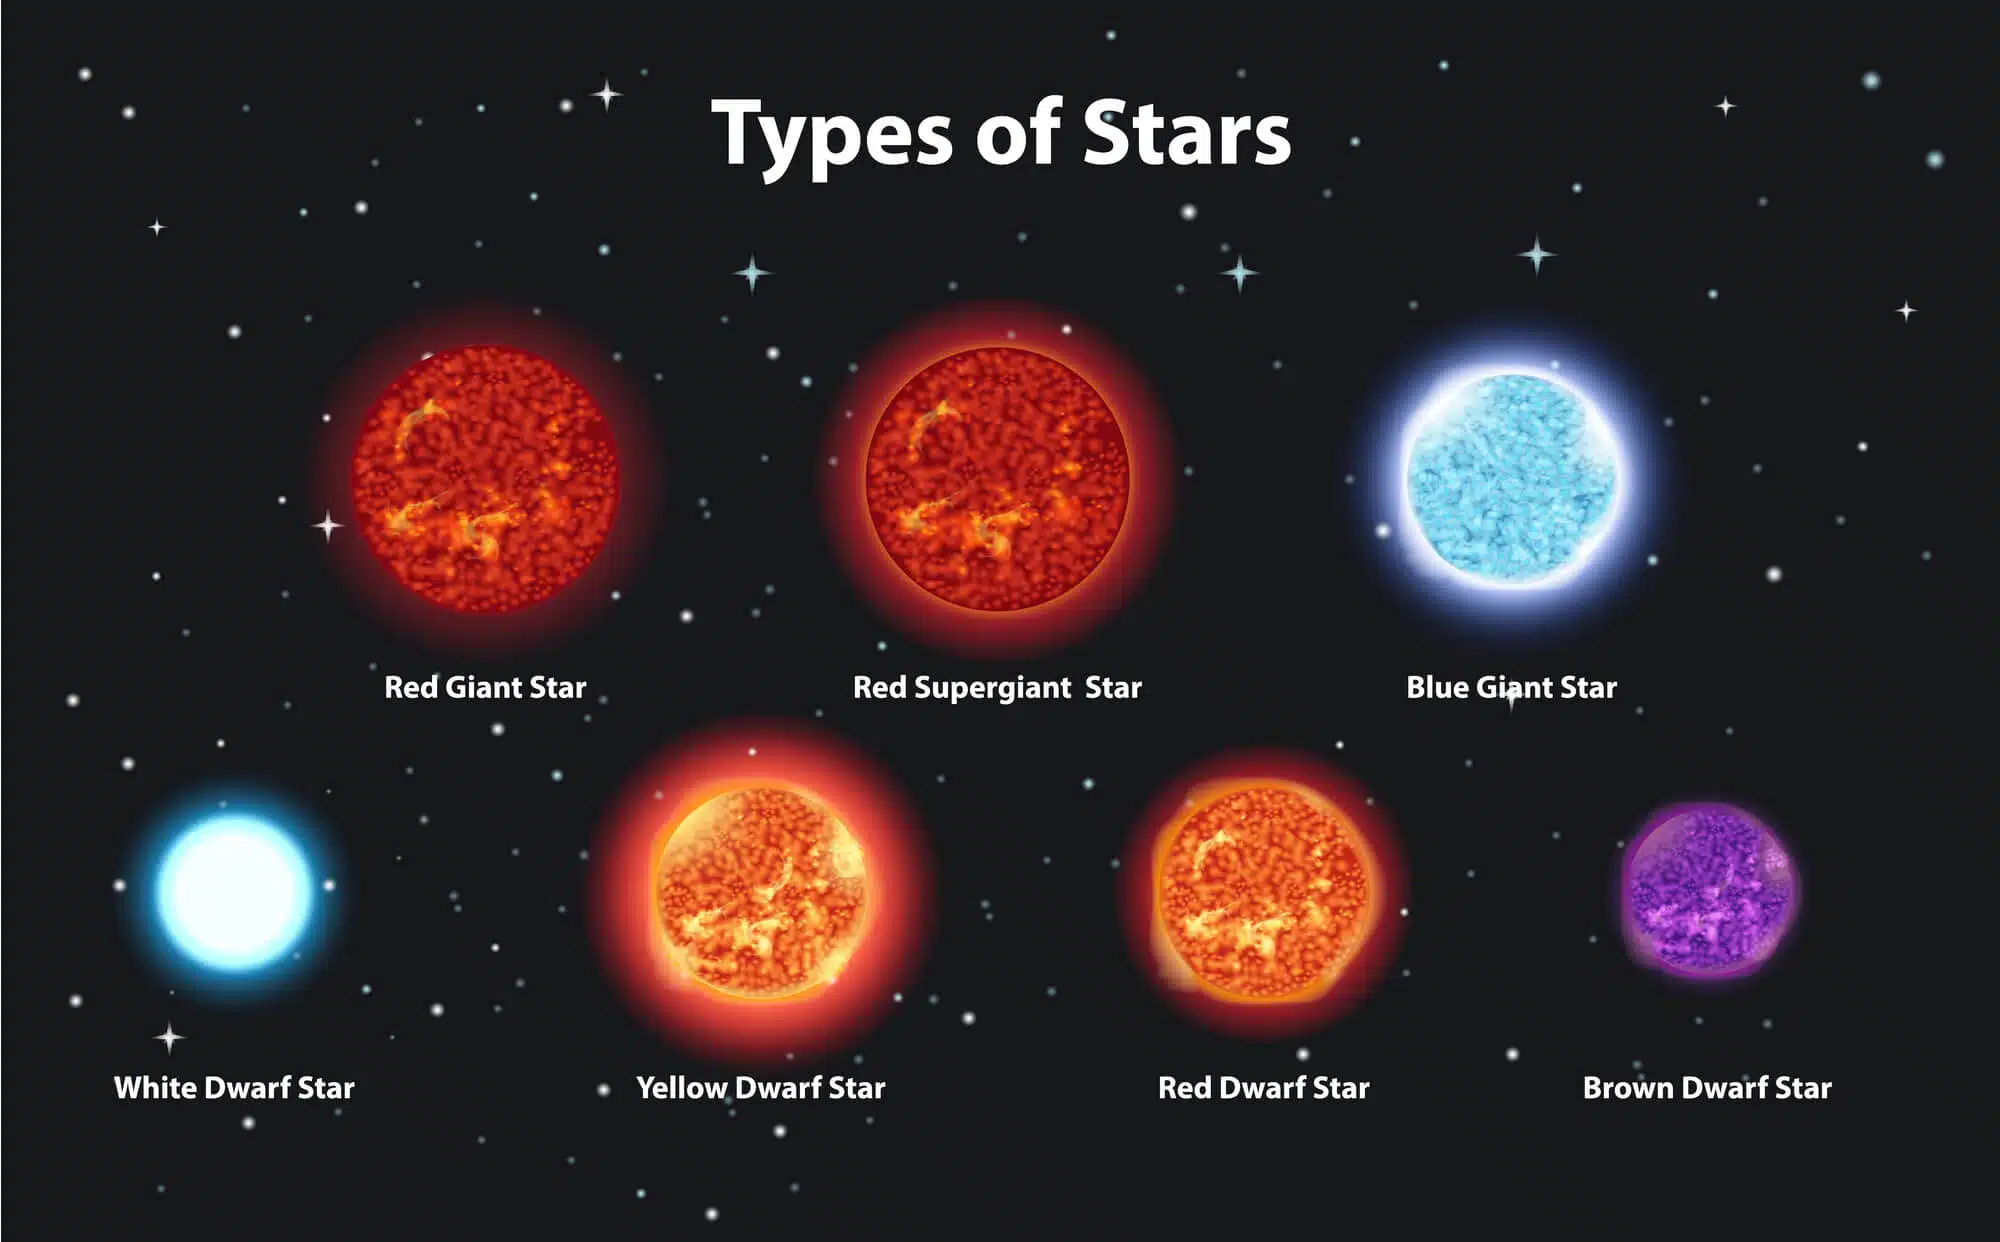 סוגים שונים של כוכבים.  <a href="https://depositphotos.com. ">המחשה: depositphotos.com</a>